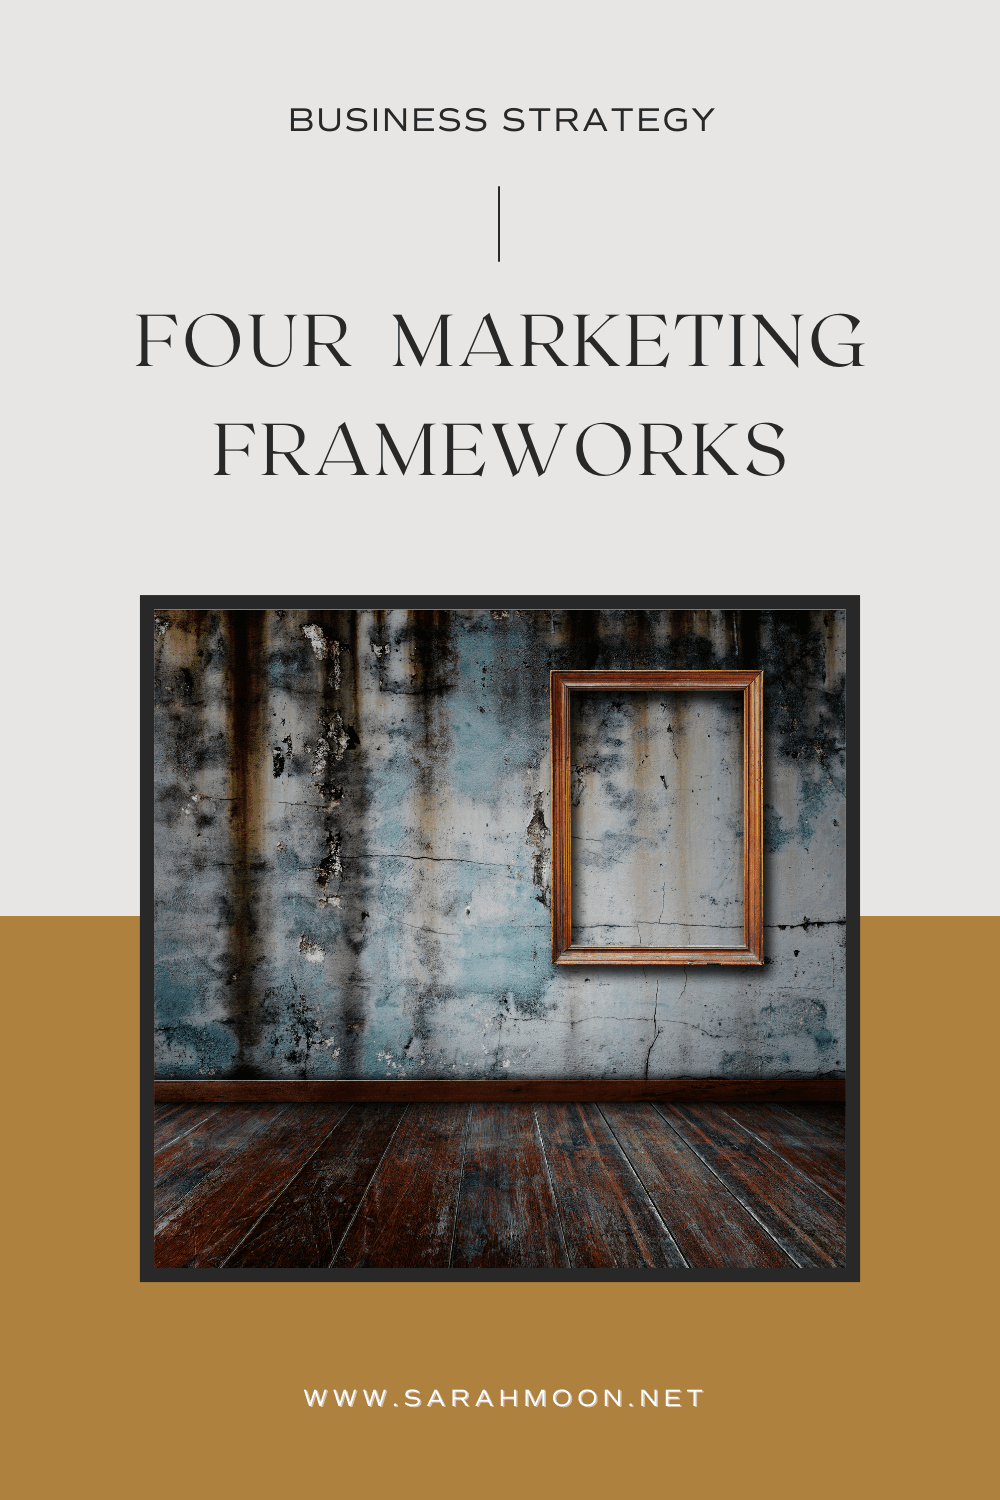 Business Strategy: Four Marketing Frameworks